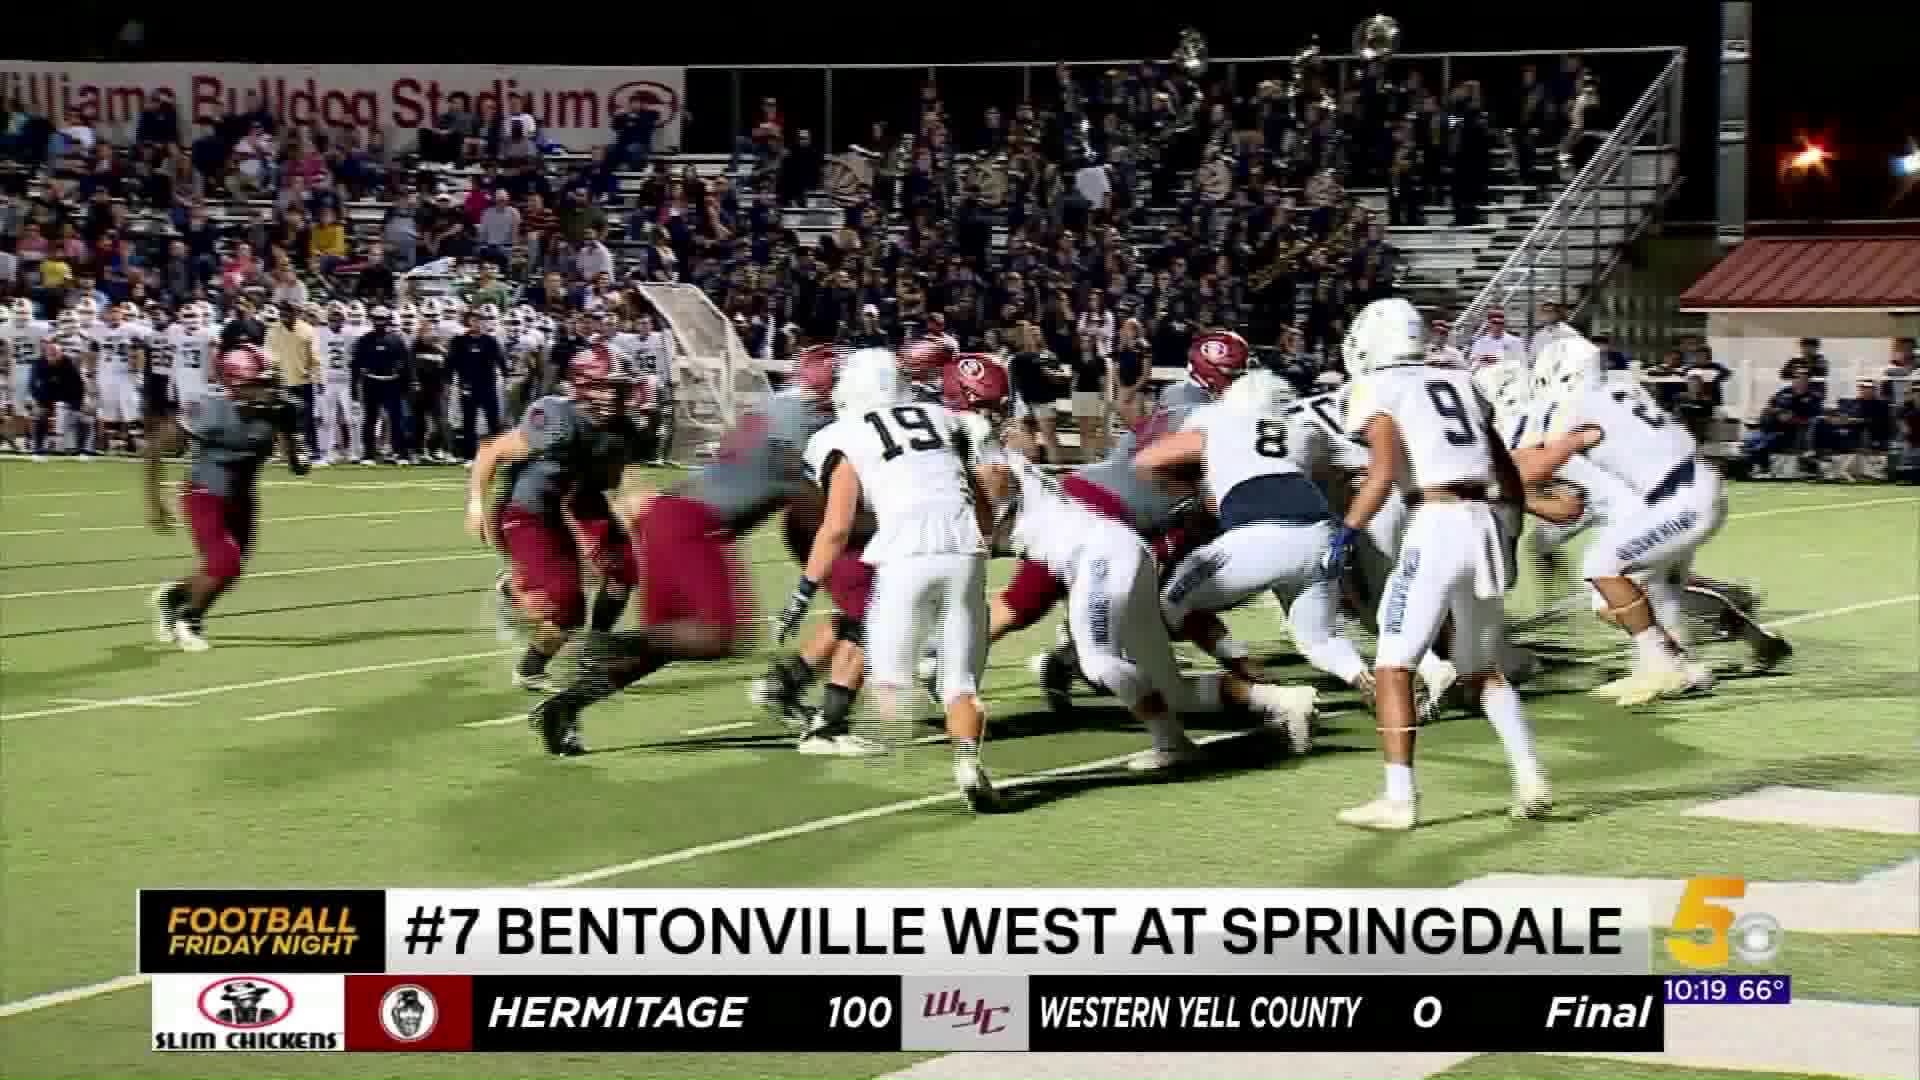 Bentonville West at Springdale